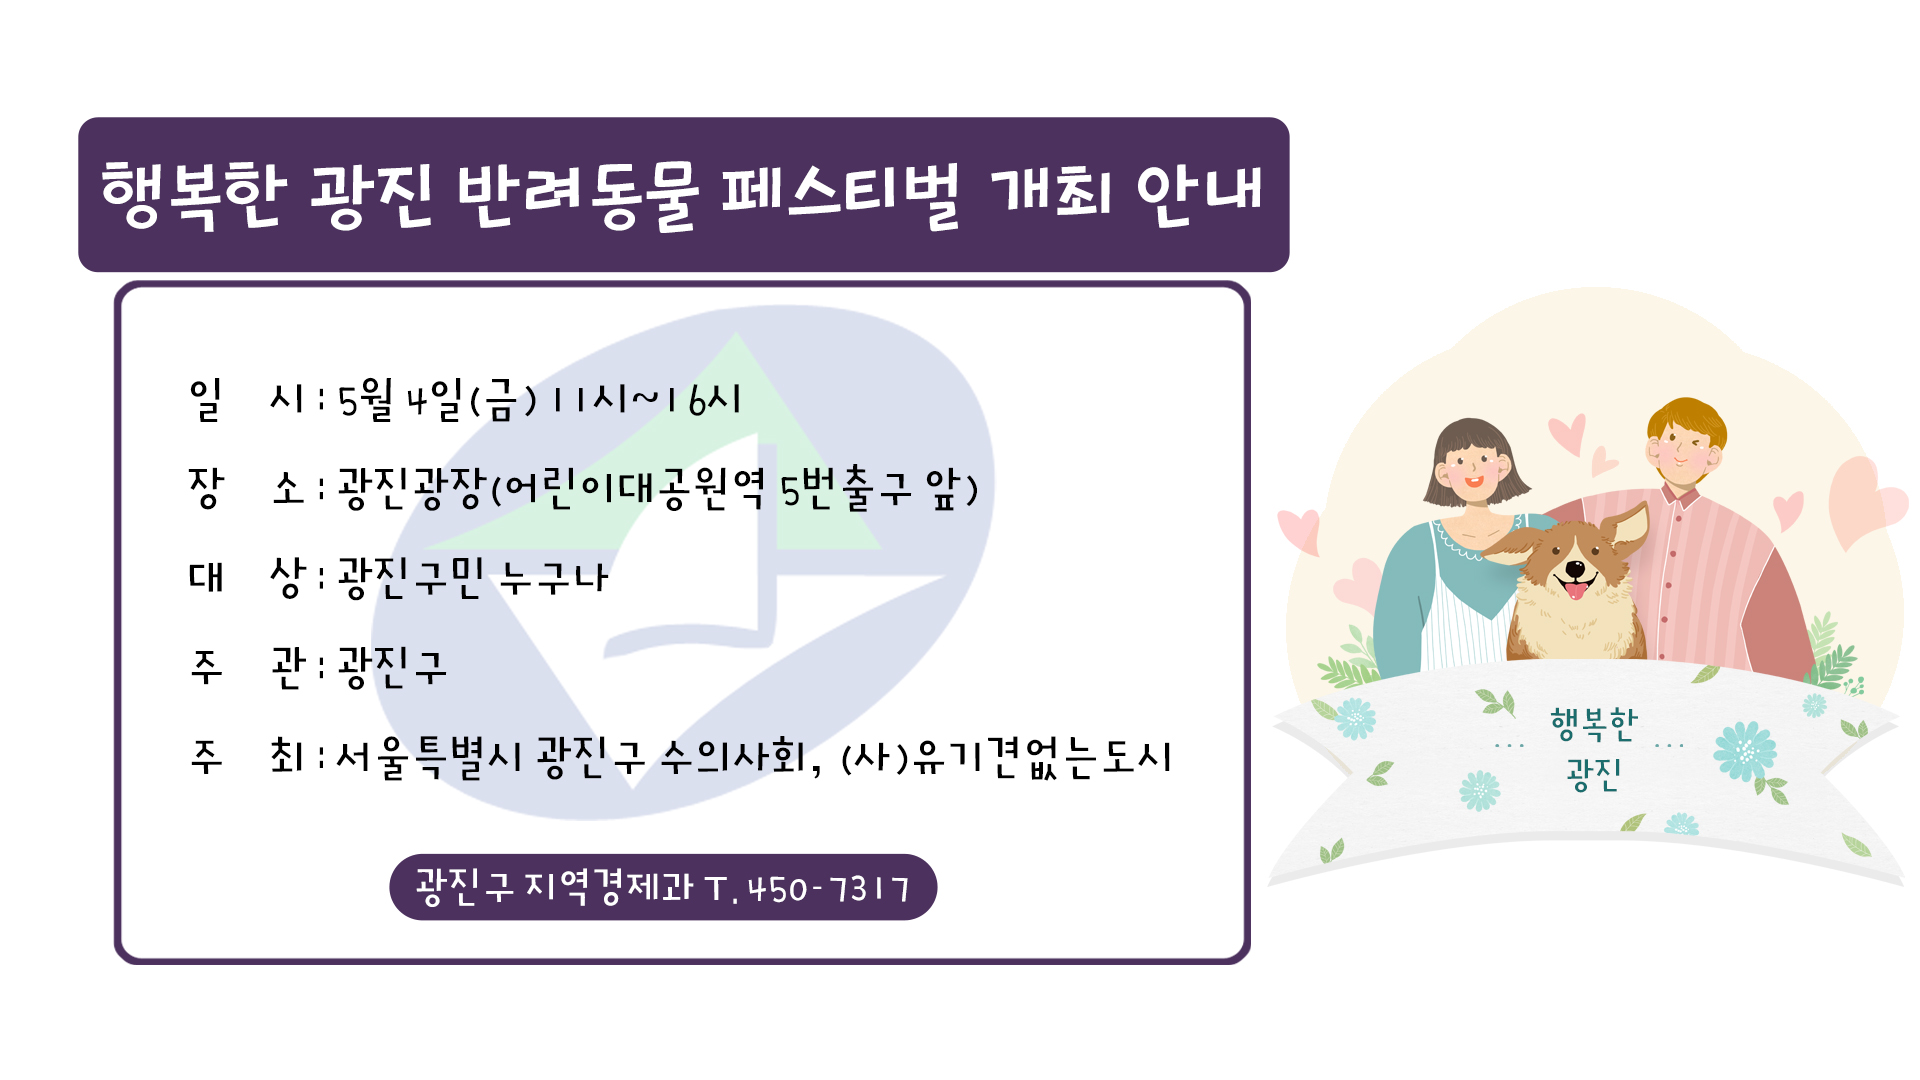 행복한 광진 반려동물 페스티벌 개최 안내